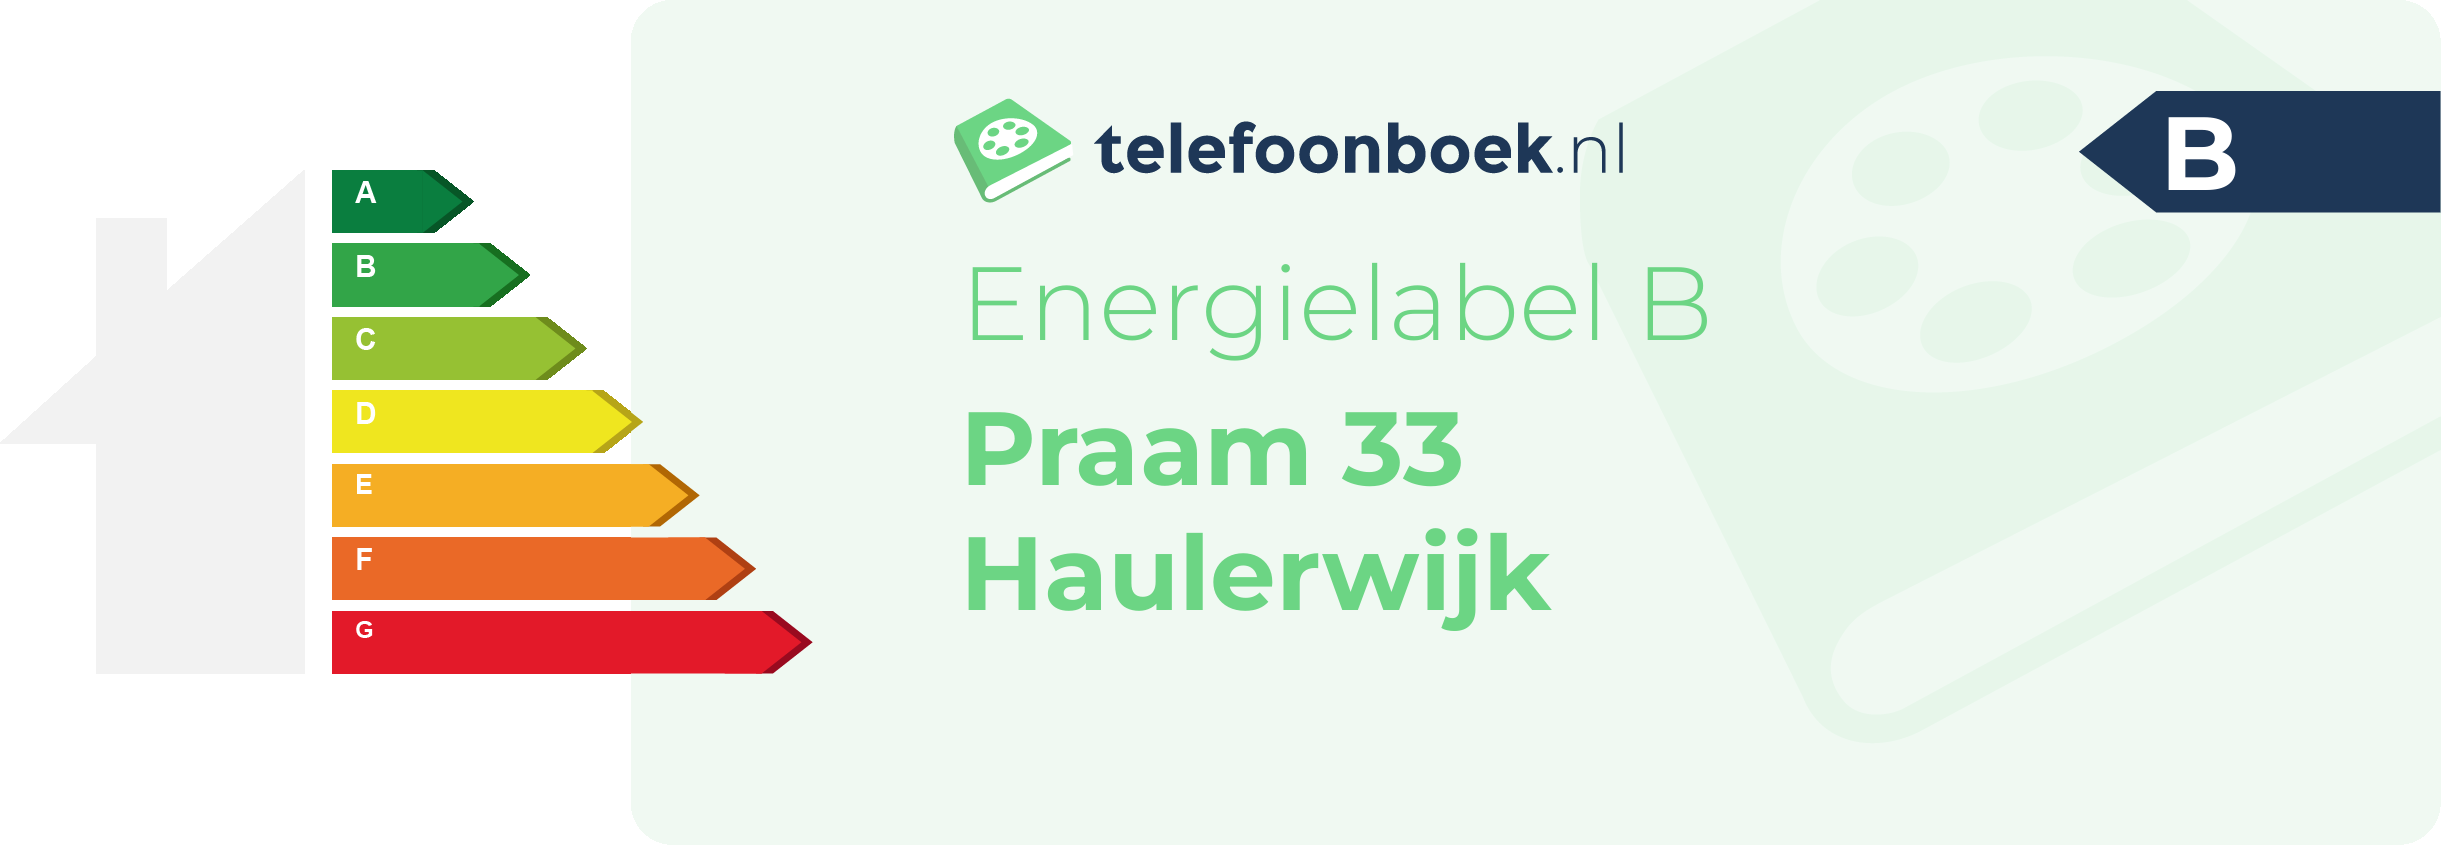 Energielabel Praam 33 Haulerwijk